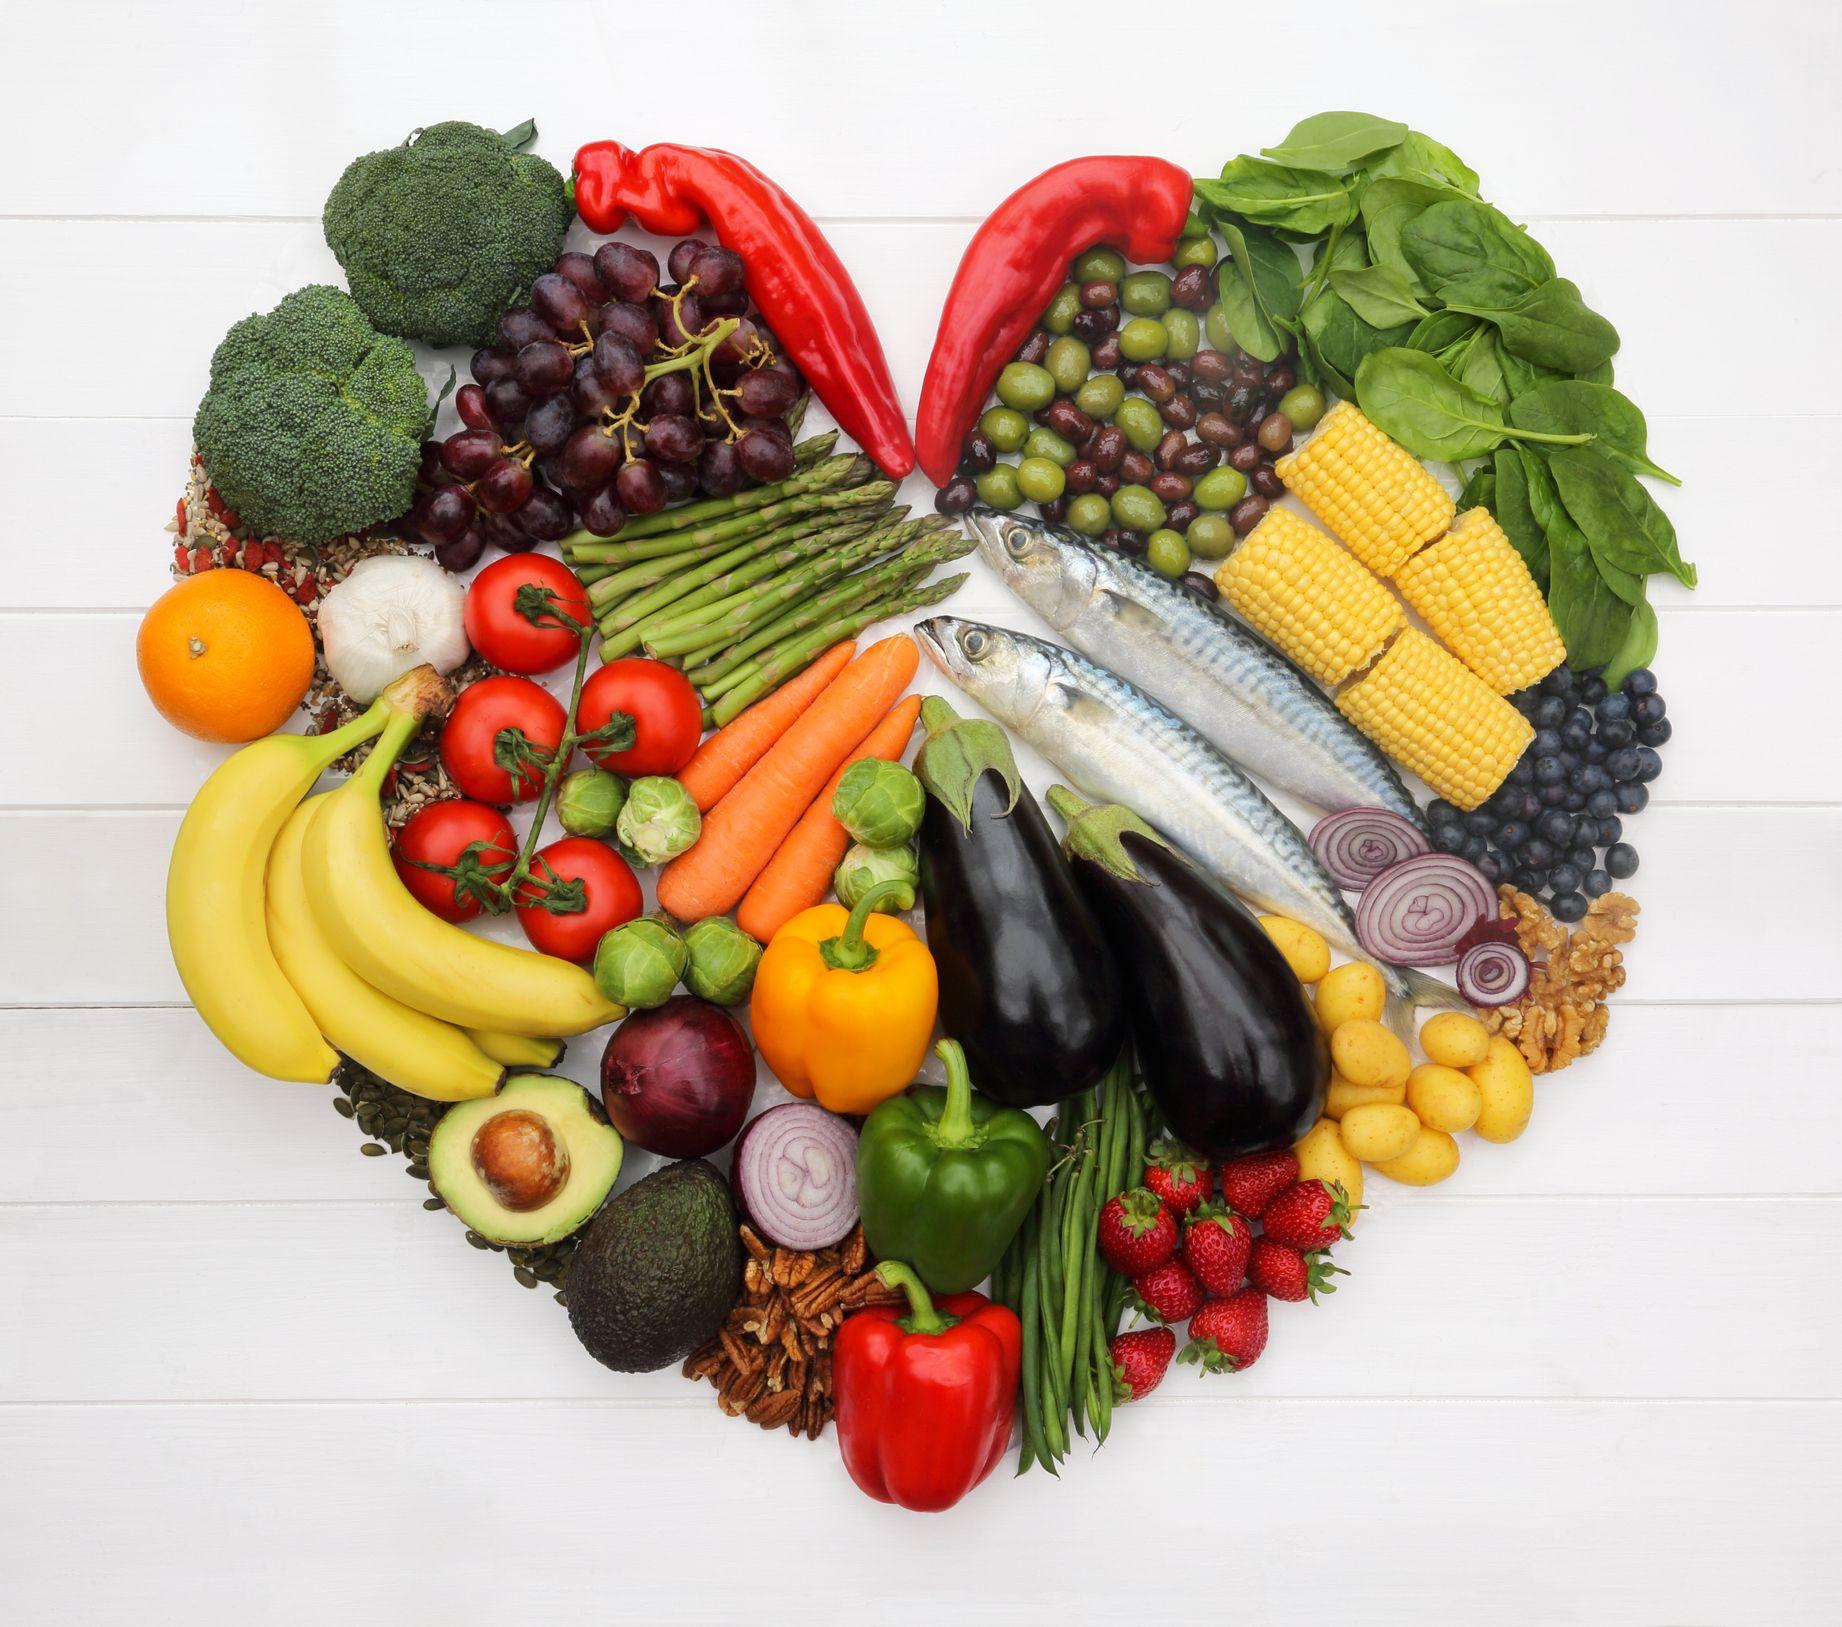 Un corazón sano requiere de alimentación balanceada y consciente, baja en grasas saturadas y comidas ultraprocesadas.
GETTY IMAGES